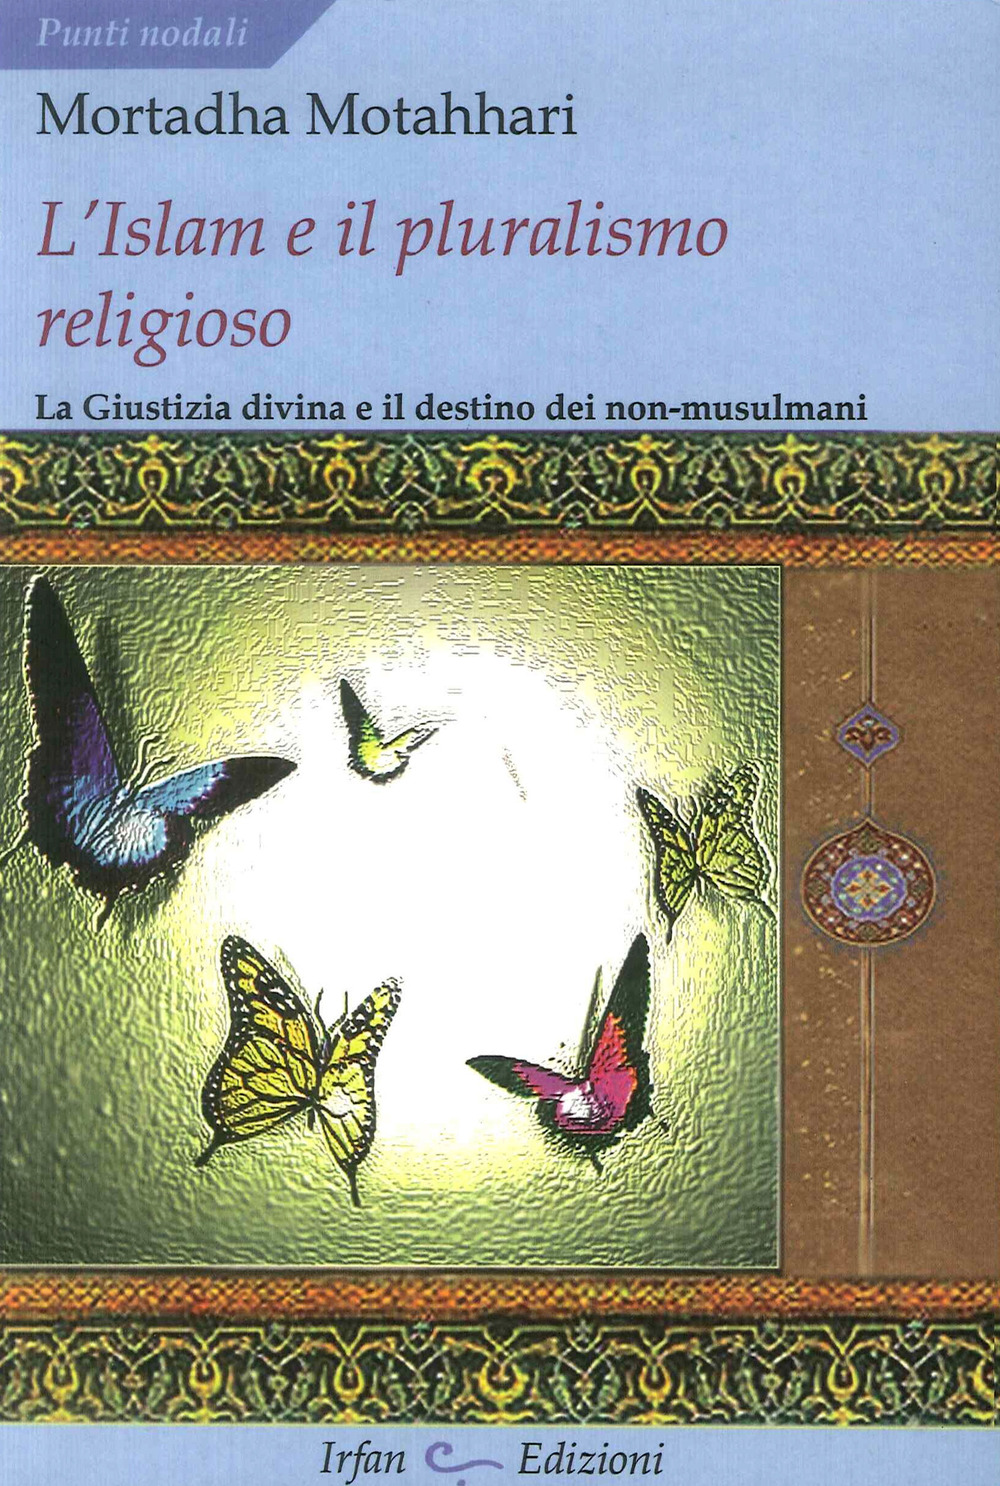 L'Islam e il pluralismo religioso. La giustizia divina e il destino dei non-musulmani